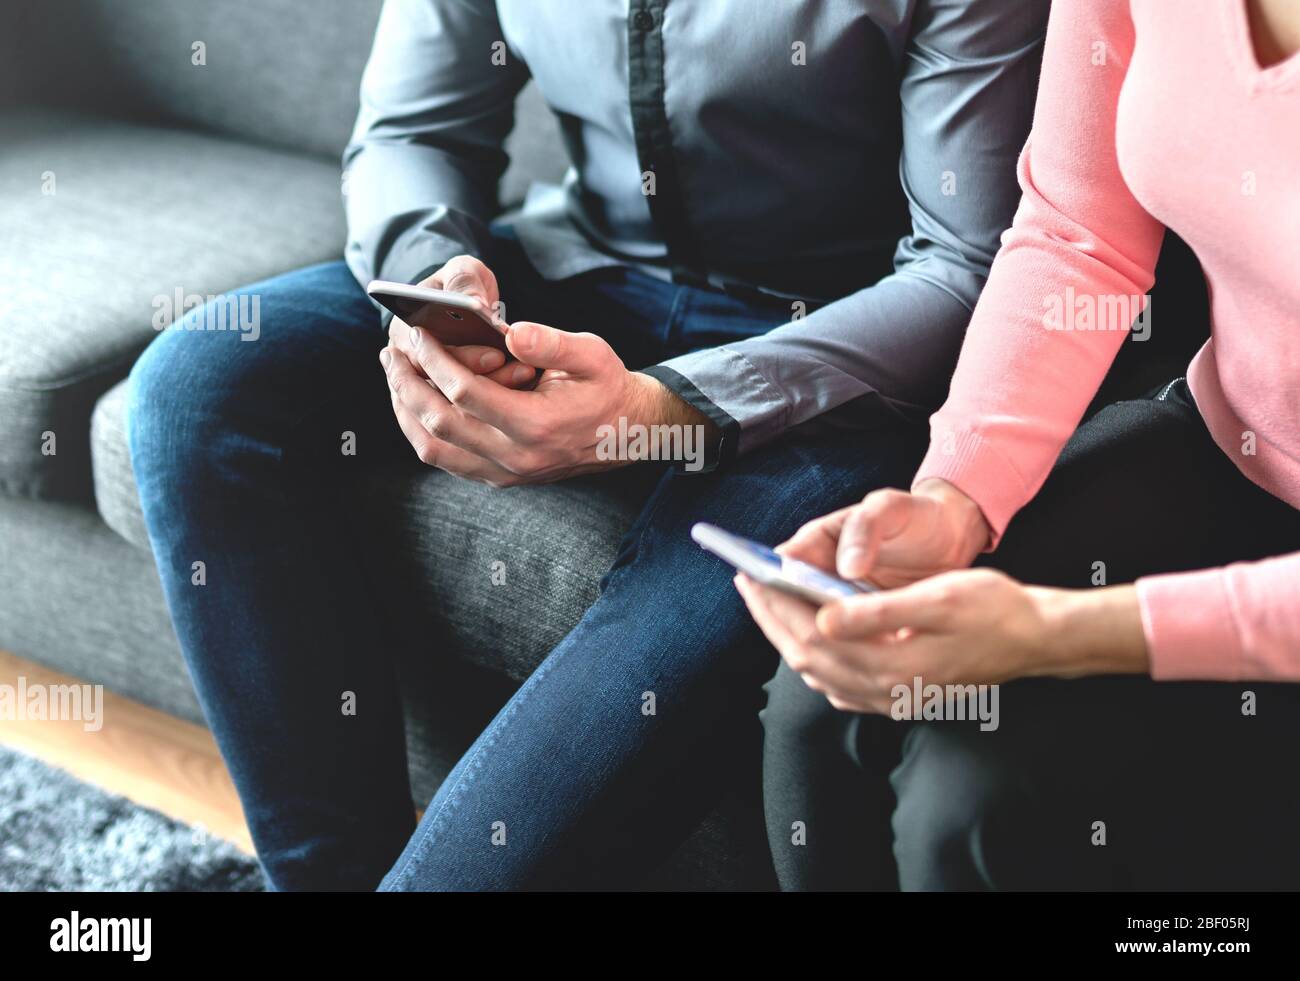 Dos personas que utilizan teléfonos móviles. Socios de negocios, amigos o parejas que miran sus smartphones. Hombre y mujer intercambiando números durante la reunión. Foto de stock